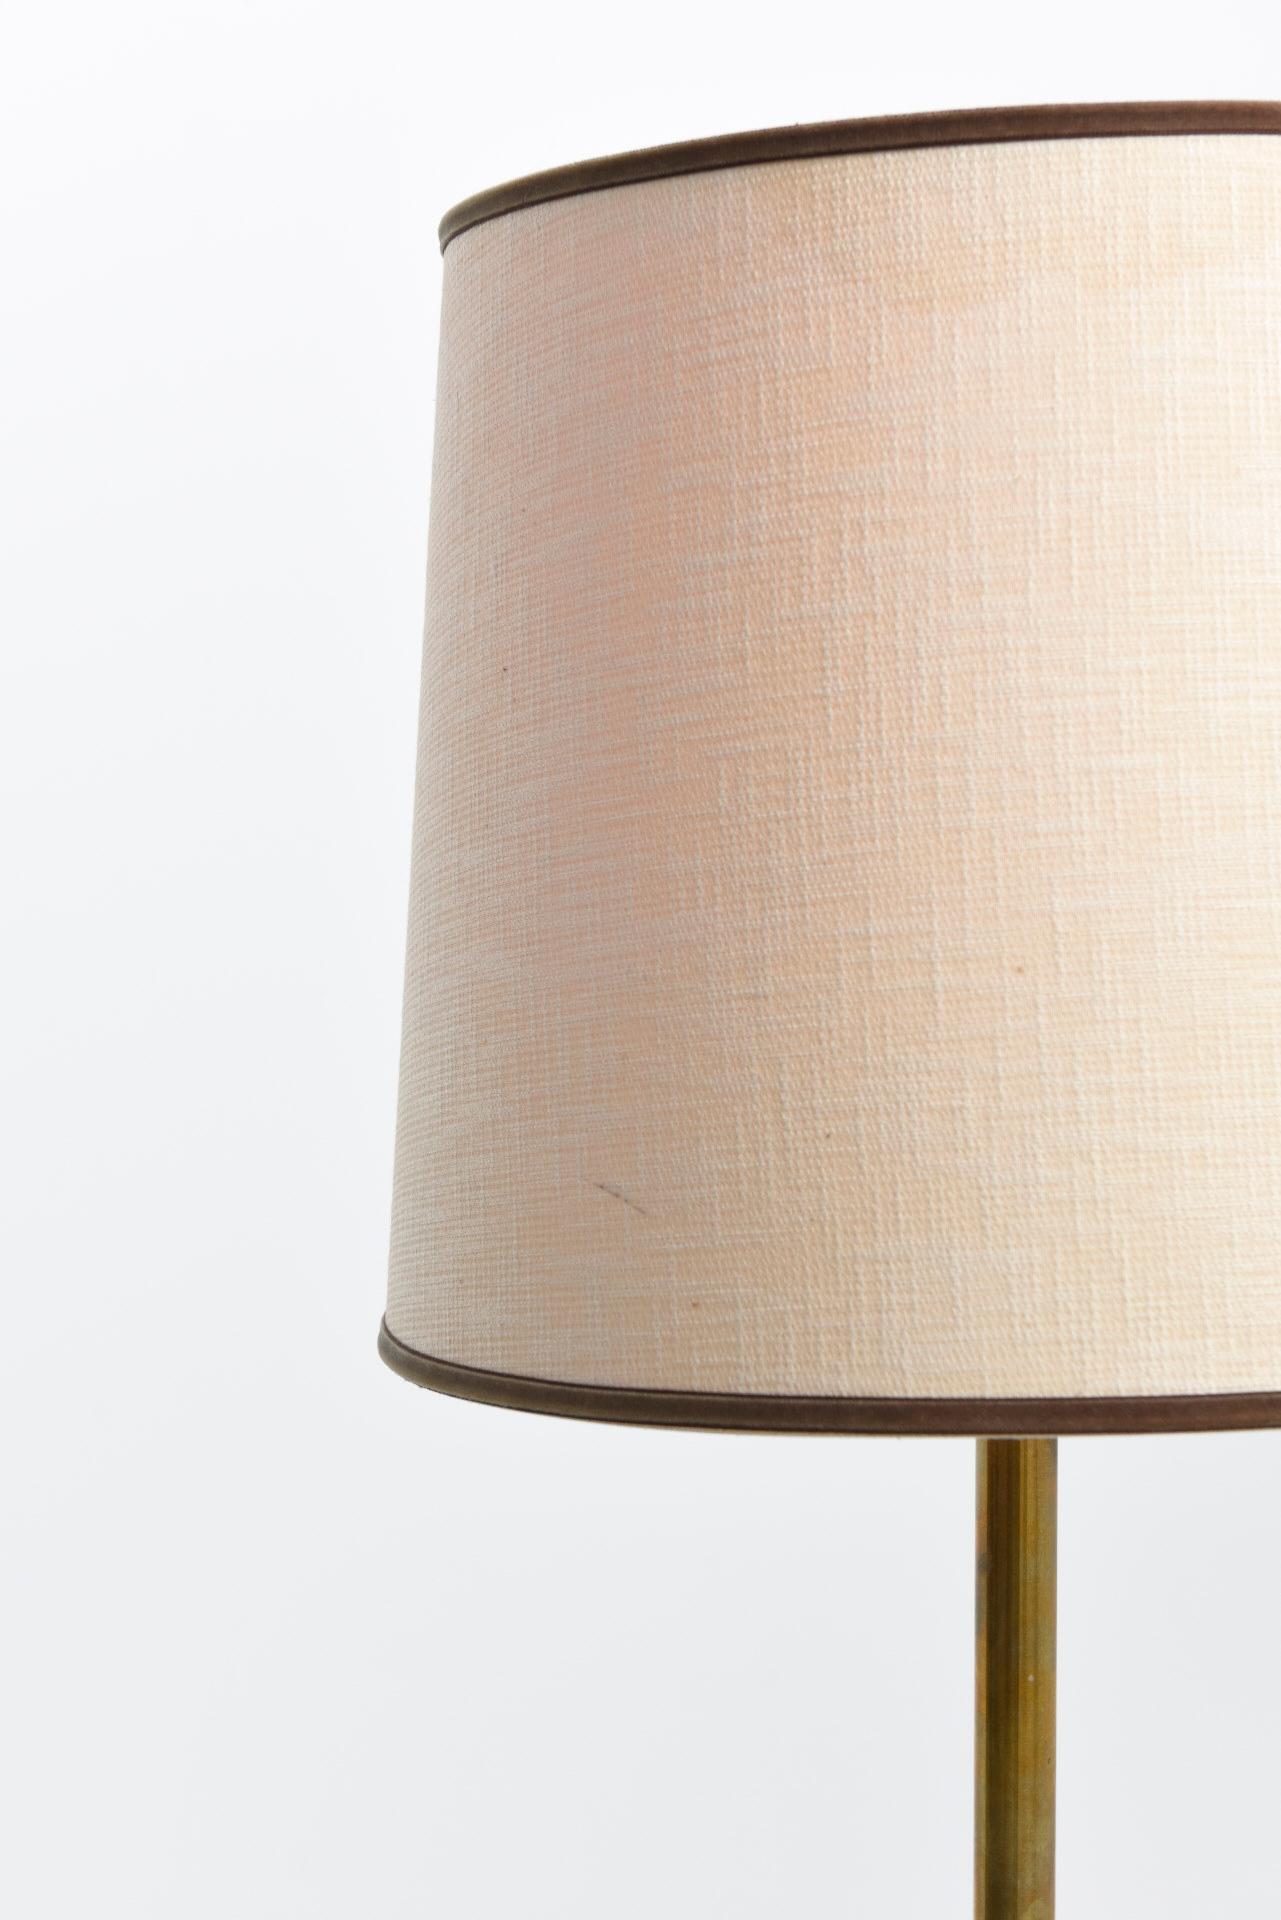 Mid-20th Century 'Monolit' Floor Lamp by Jo Hammerborg for Fog & Mørup For Sale